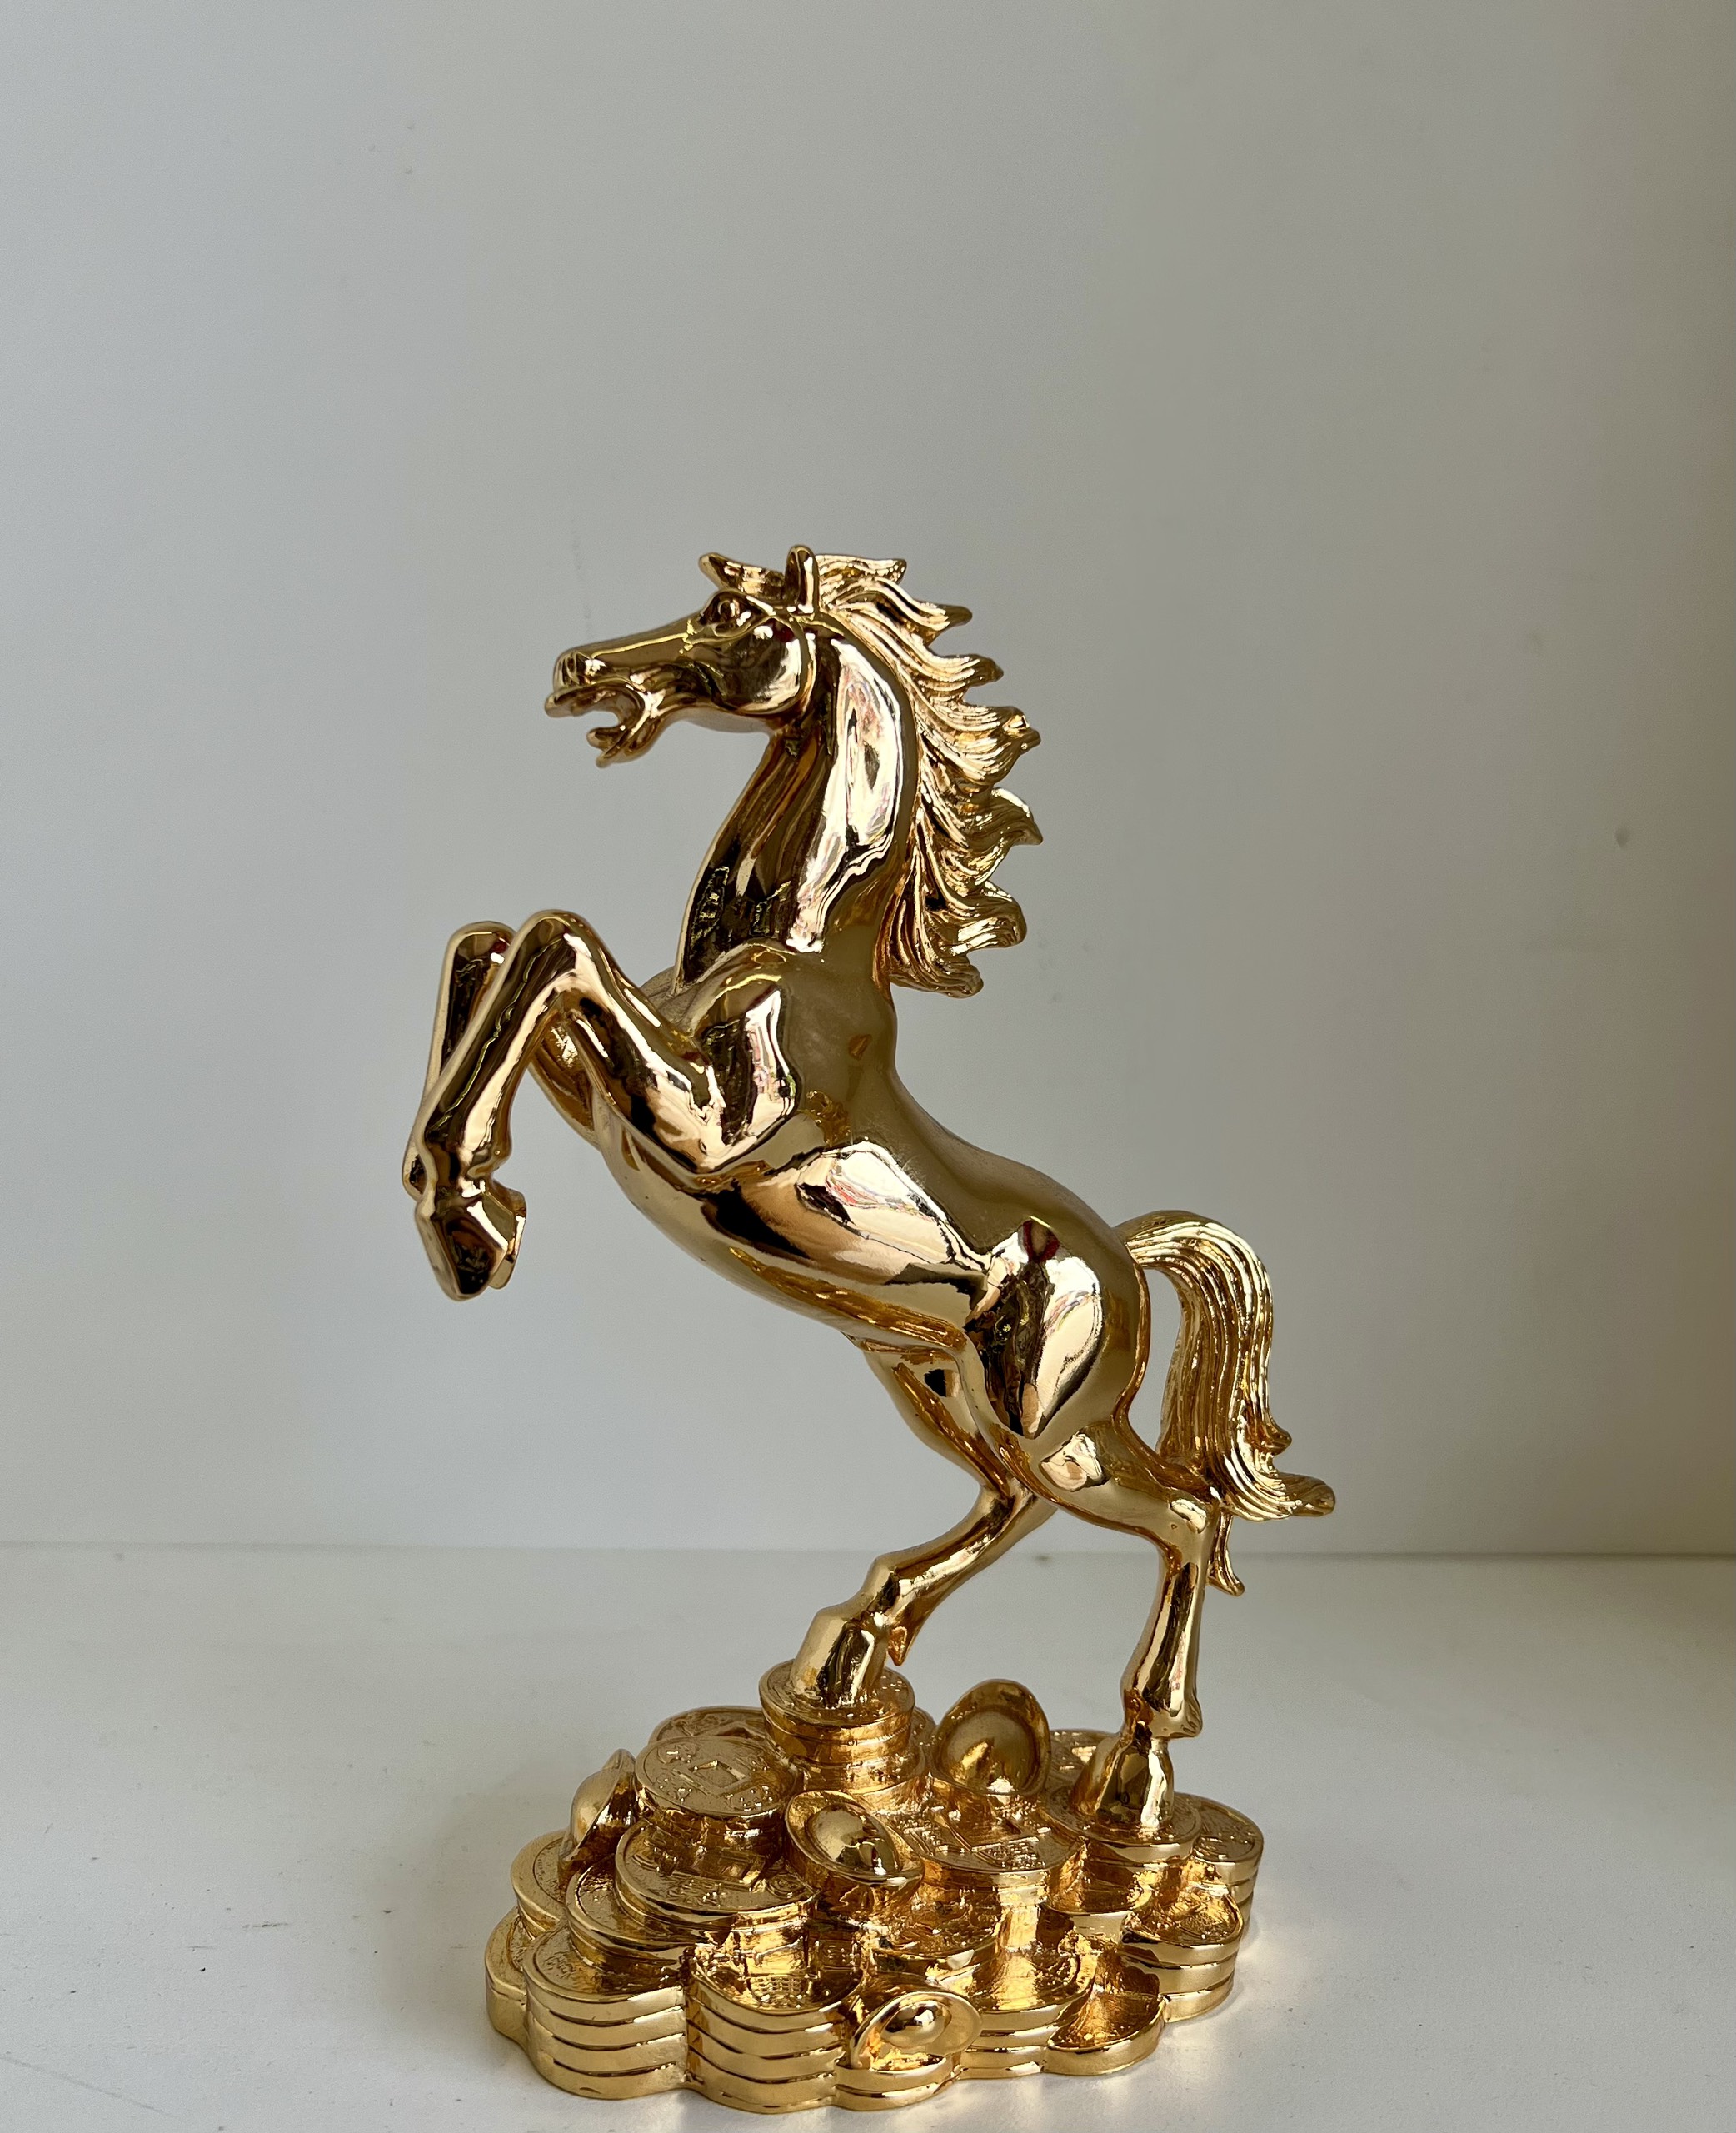 Ngựa dát vàng – biểu tượng năm mang lại tài lộc, công danh